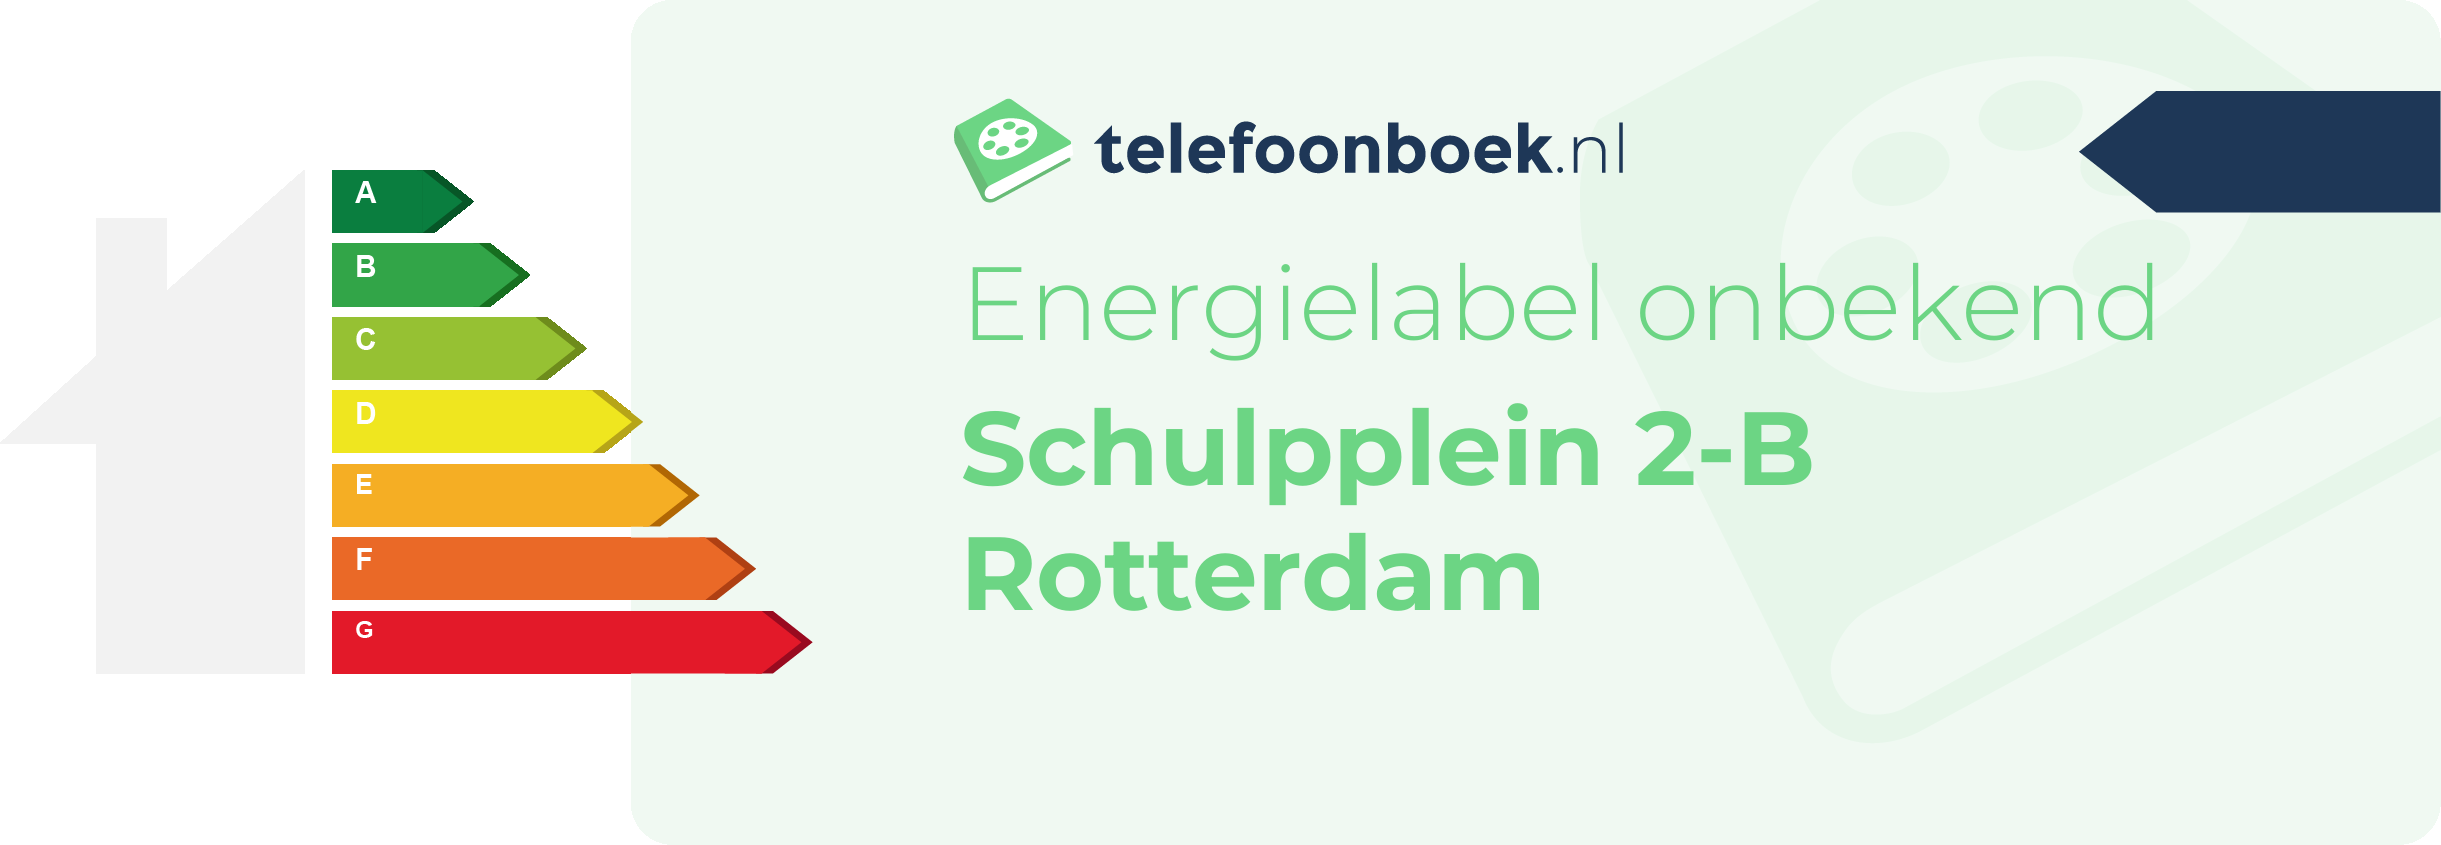 Energielabel Schulpplein 2-B Rotterdam